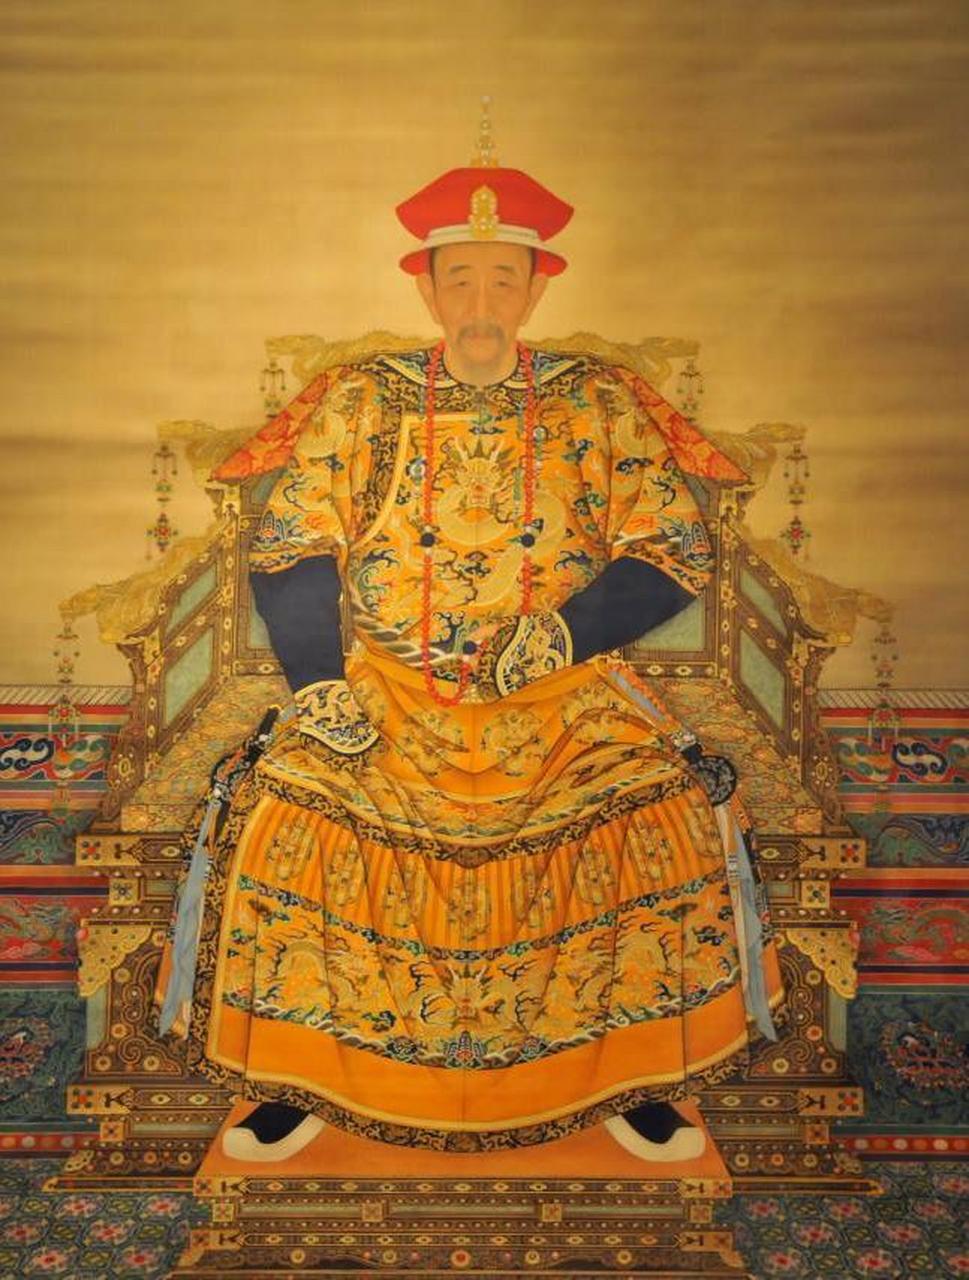 历史上在位时间最短的皇帝是金末帝完颜承麟,在位仅半天,最长的是康熙